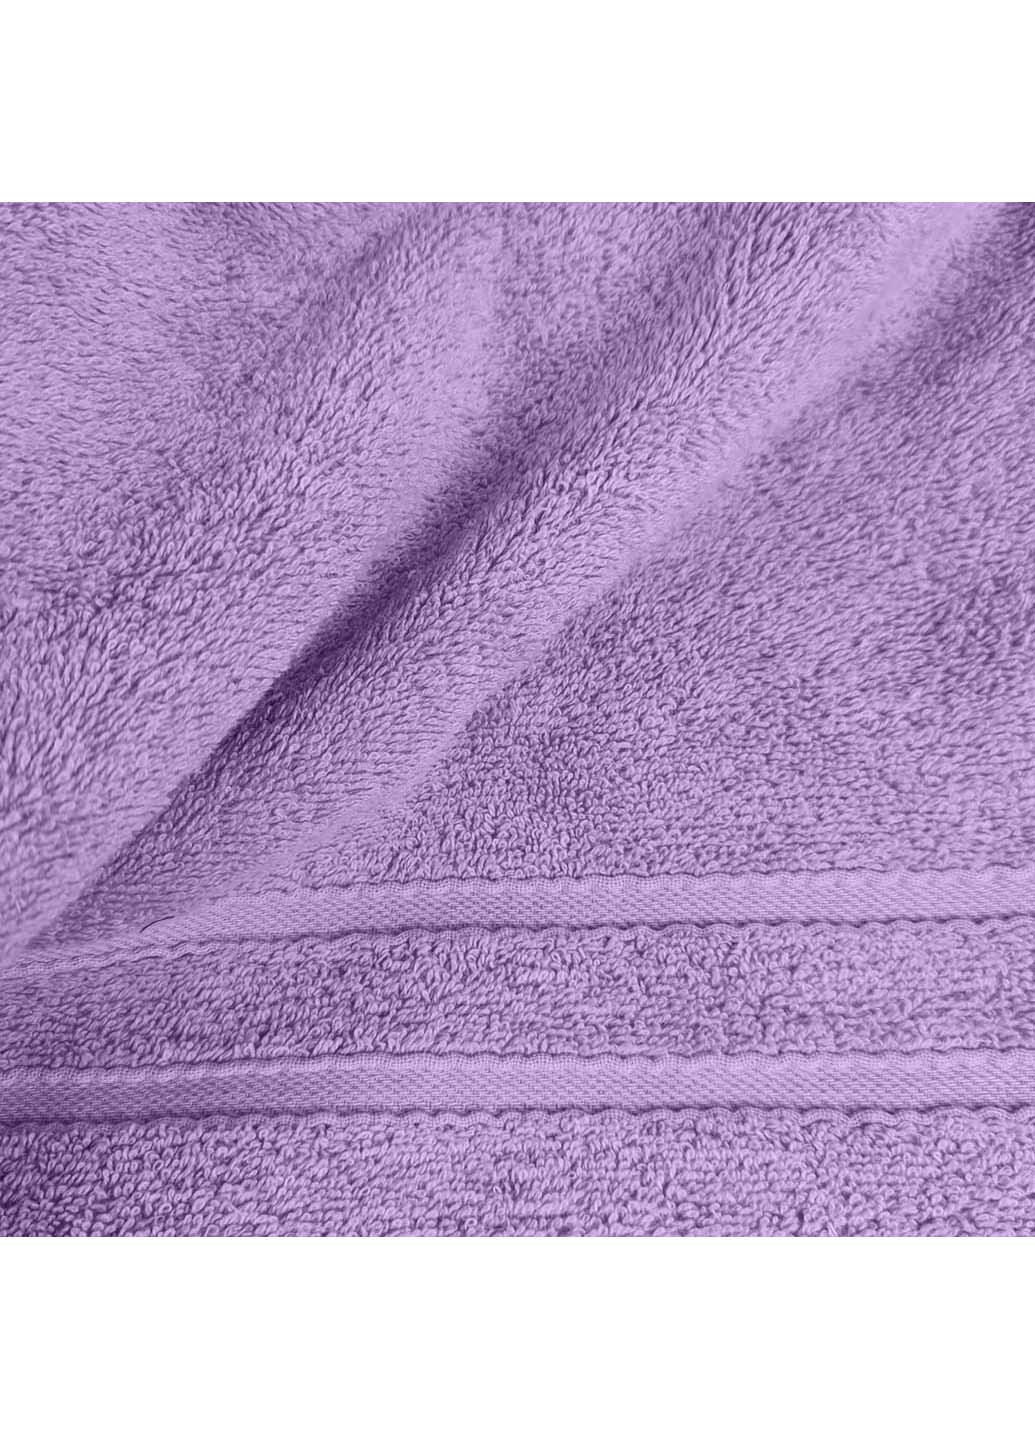 Cosas полотенце махровое 30х50 см фиолетовый производство -